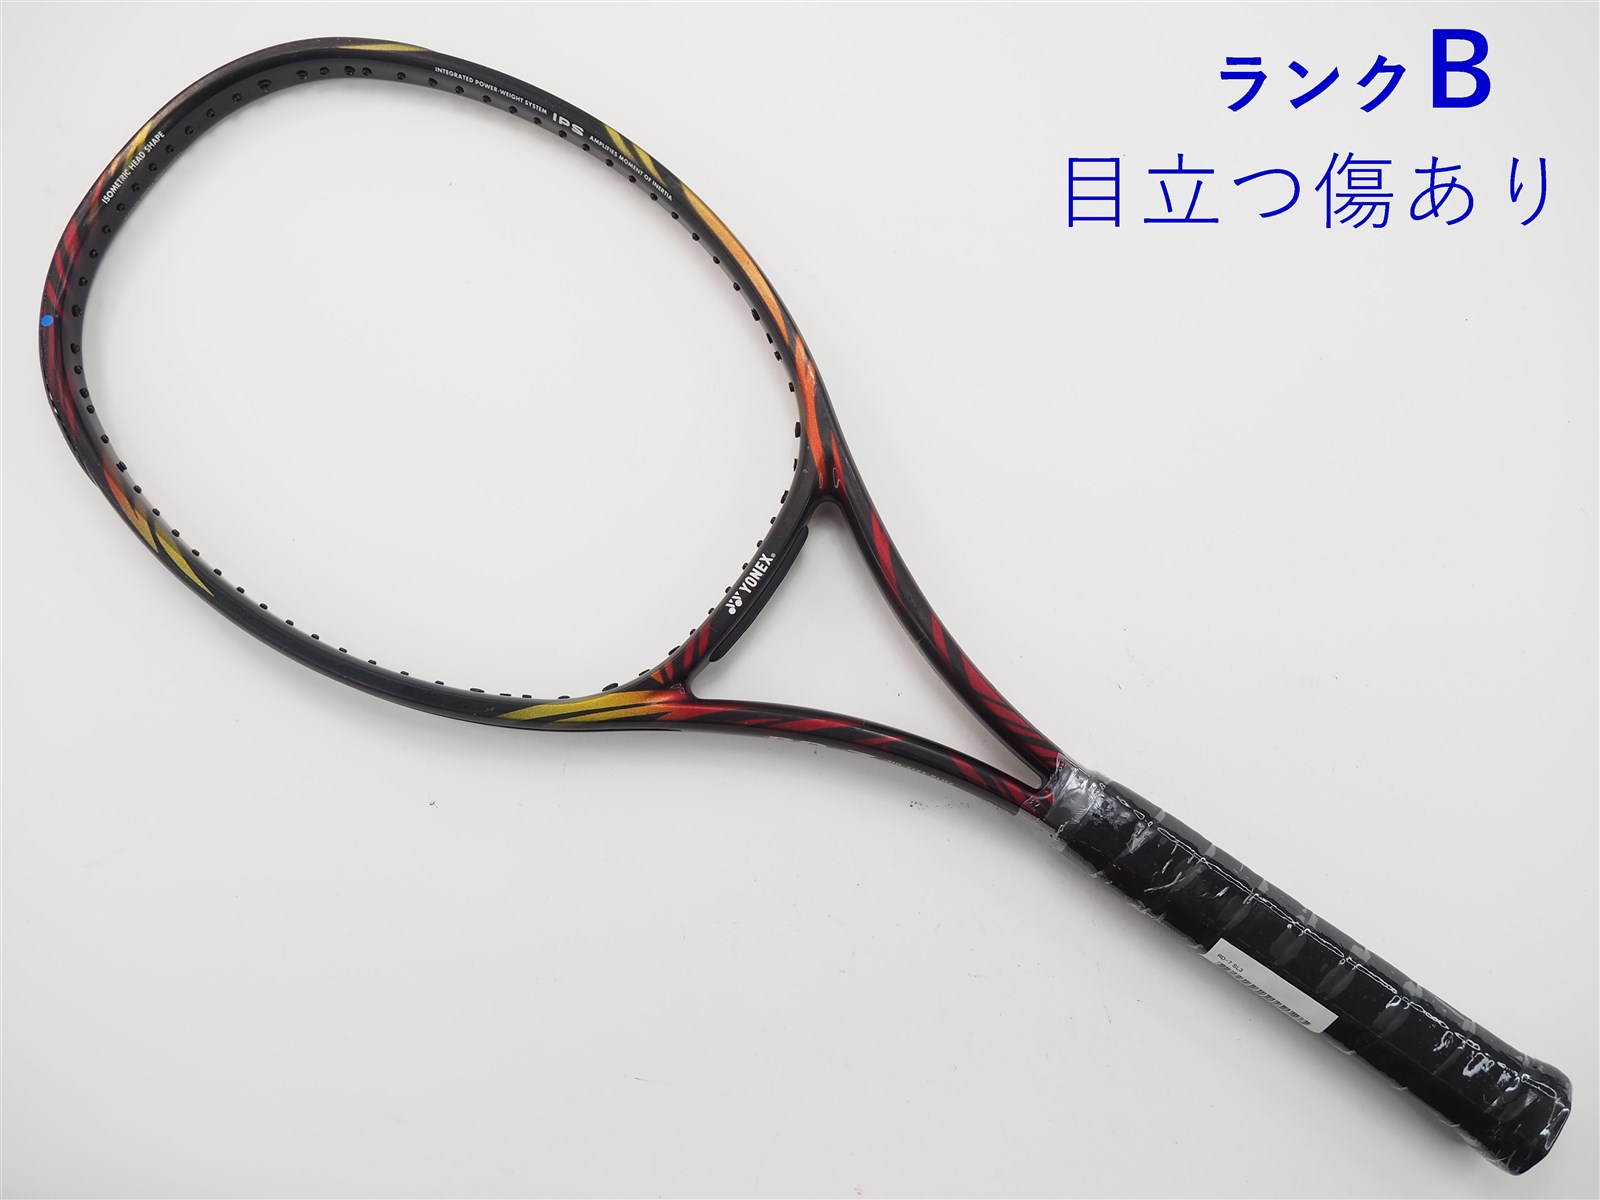 中古】ヨネックス RD-7YONEX RD-7(SL3)【中古 テニスラケット】【送料 